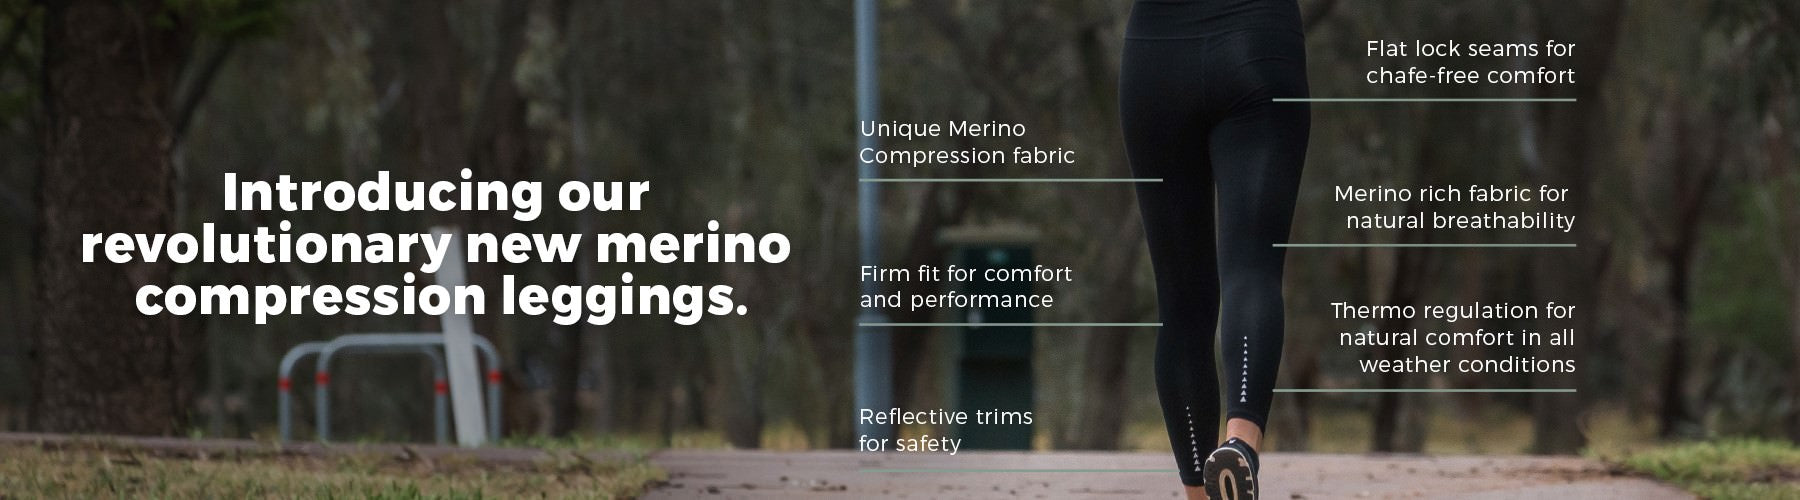 Merino-Compression Leggings